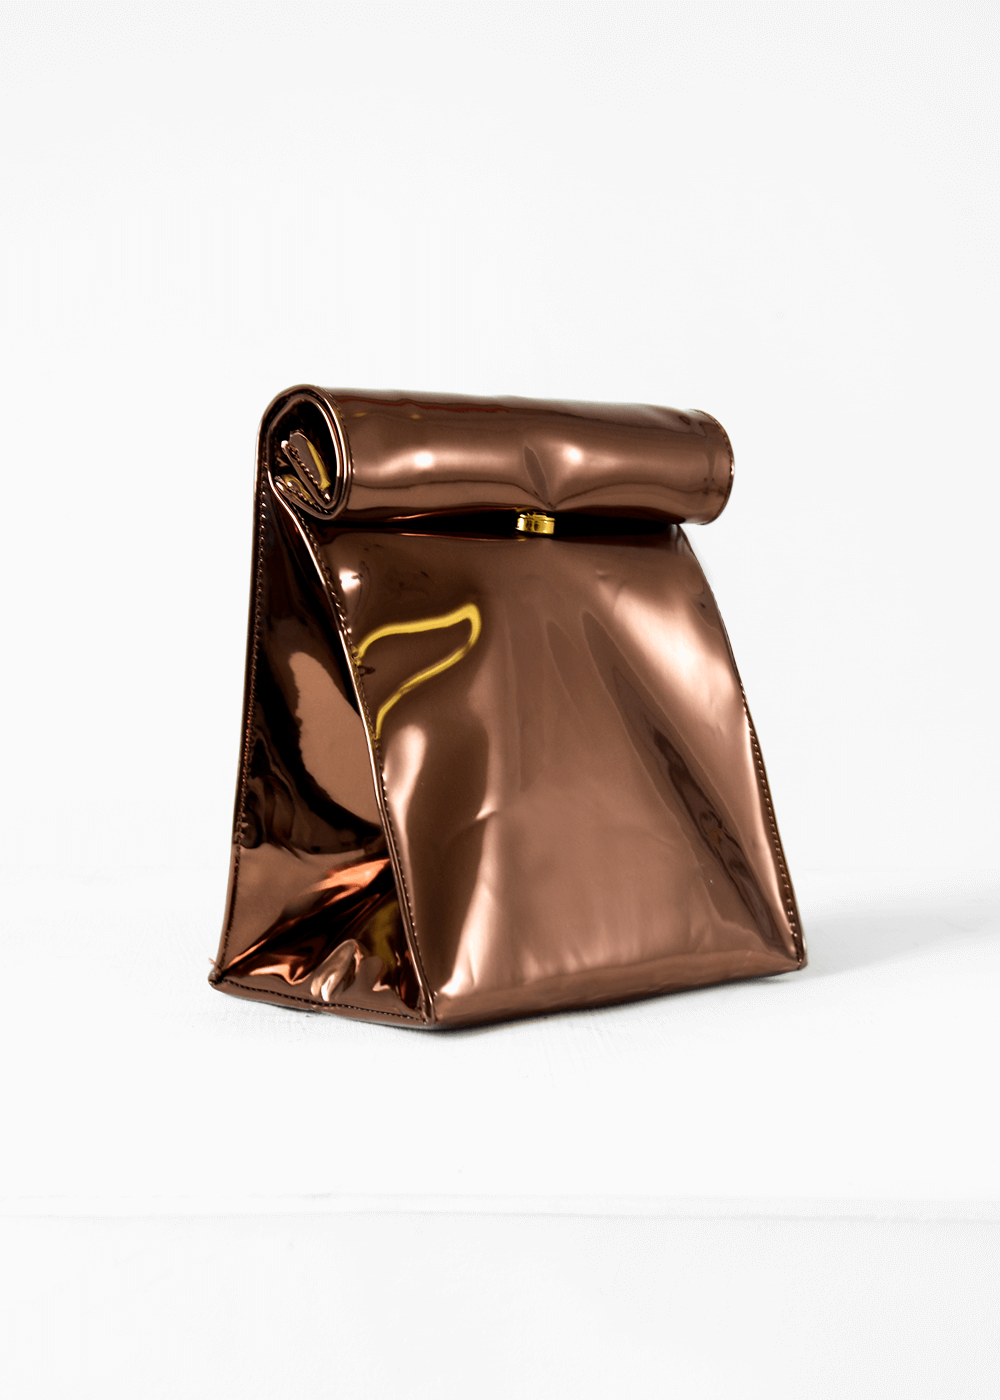 Lunchbag handbag via New Classics